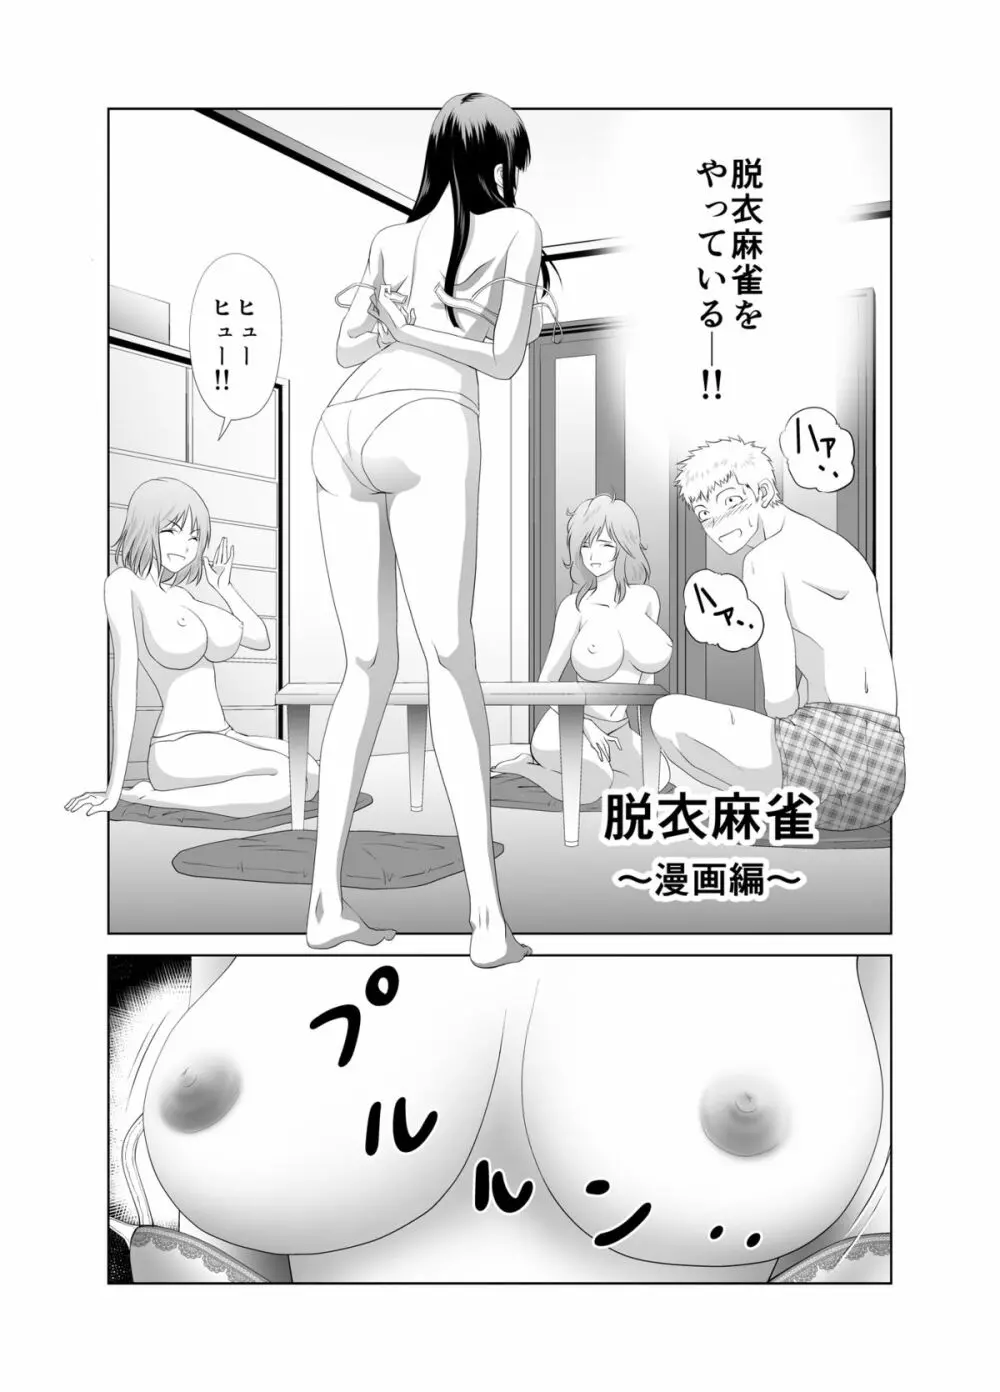 脱衣麻雀～漫画編～【完成版】 2ページ